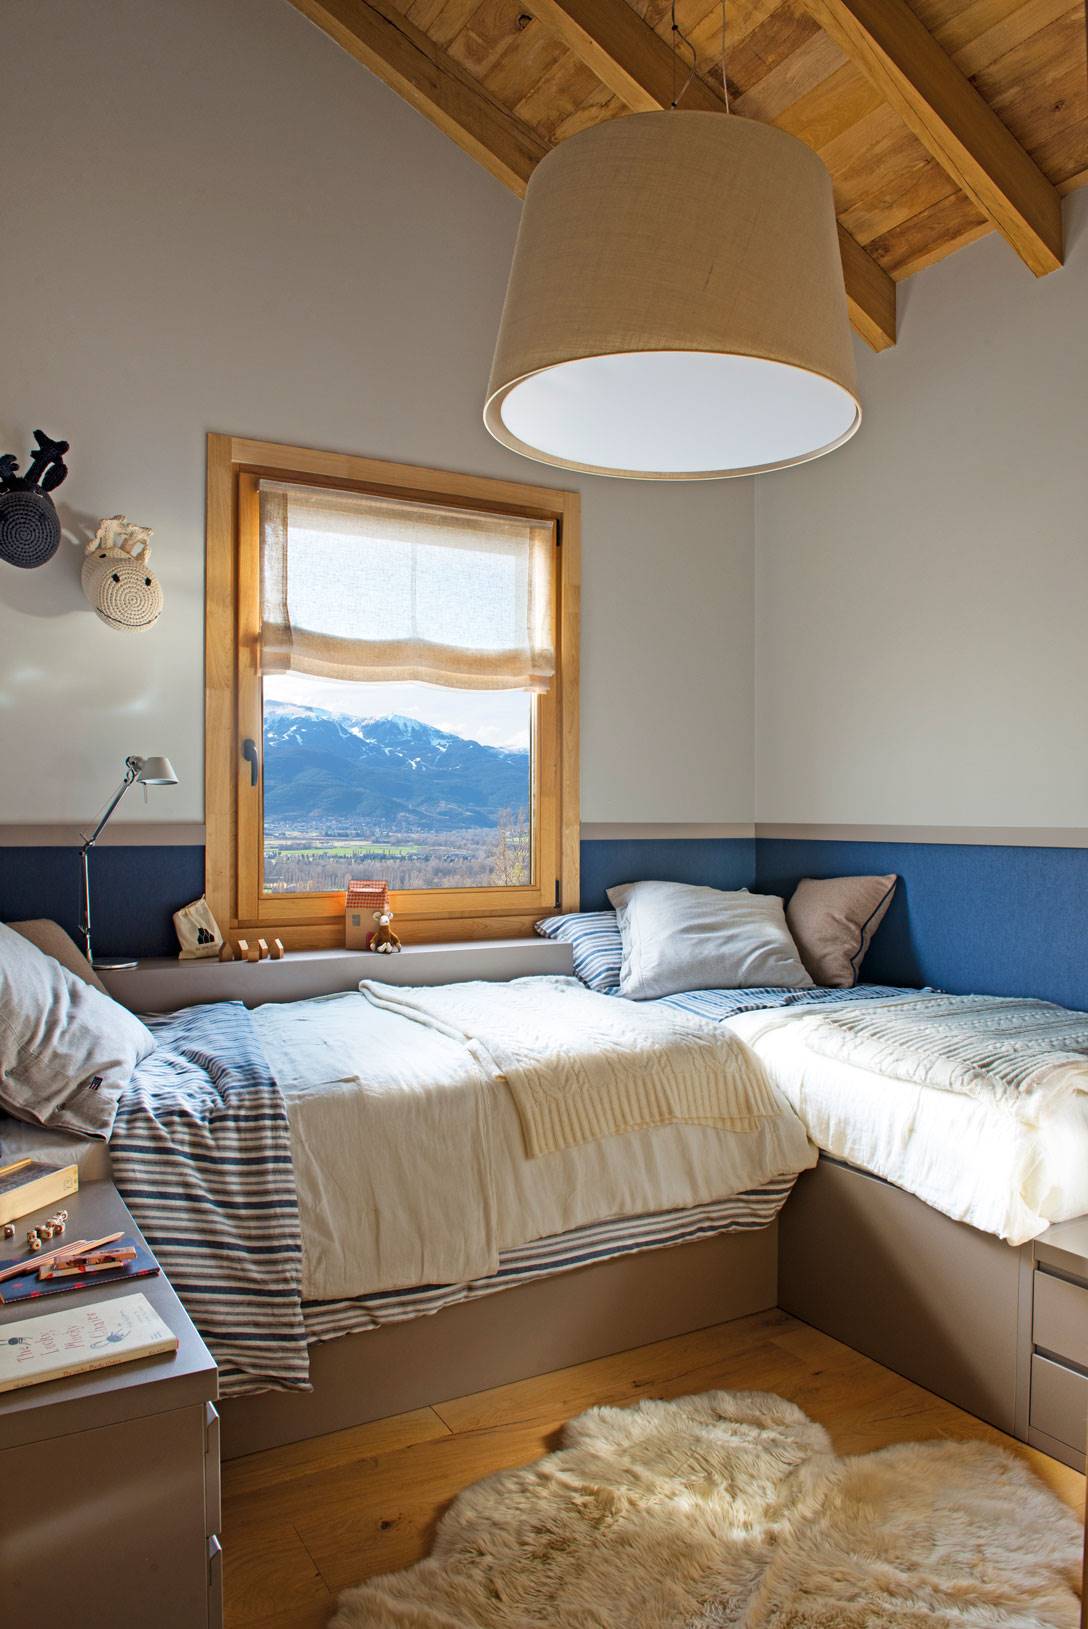 Dormitorio infantil pequeño con dos camas, arrimadero azul y techo abuhardillado.